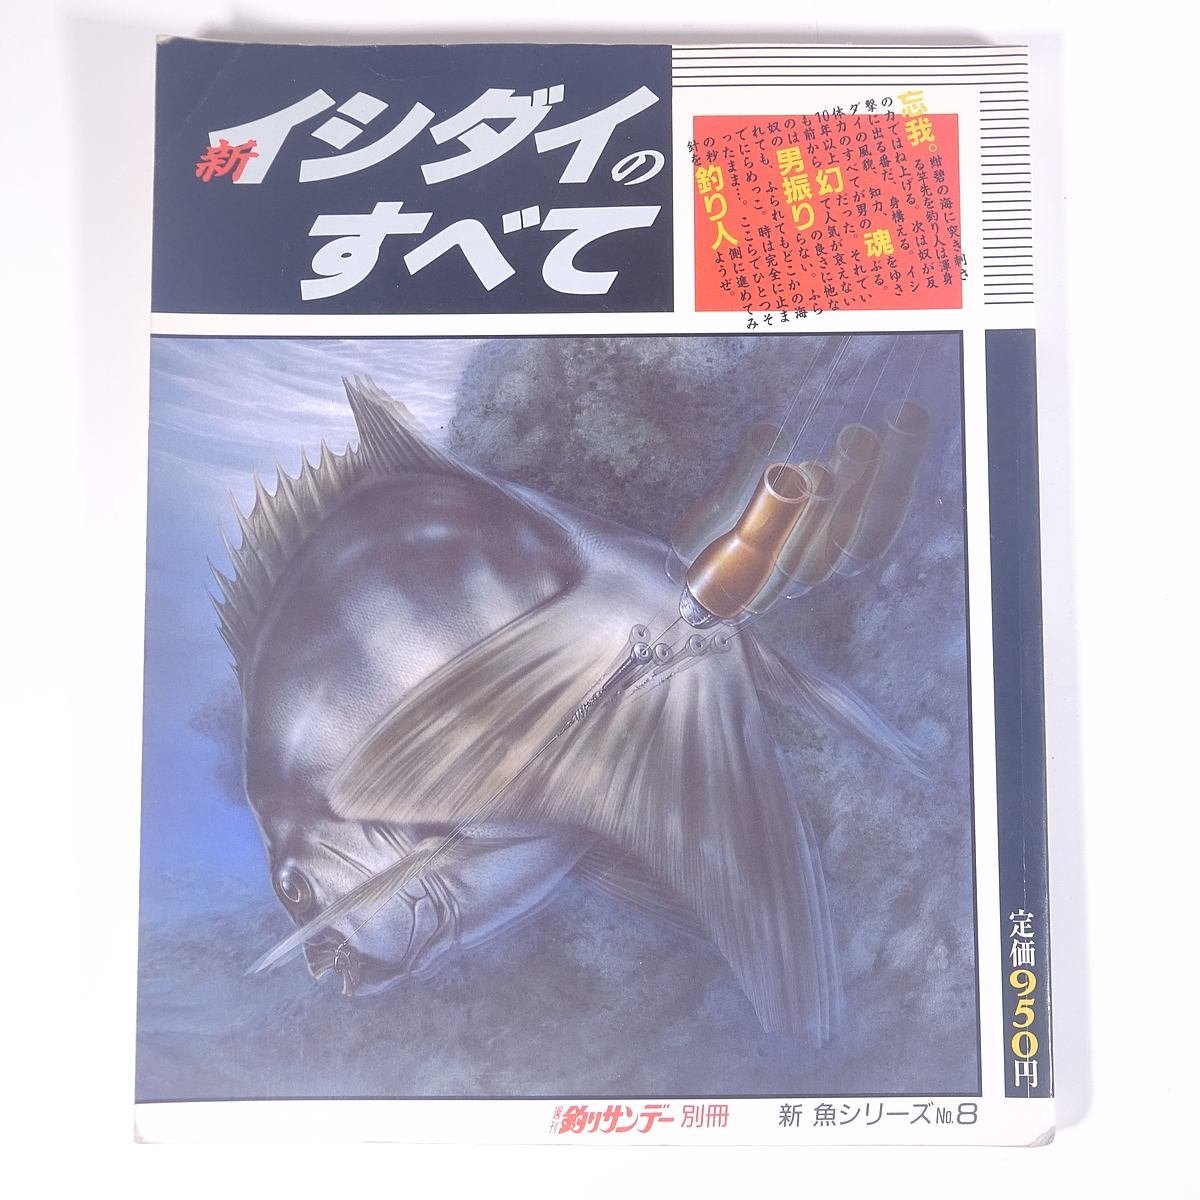 新 イシダイのすべて 新魚シリーズ8 週刊釣りサンデー別冊 1988 大型本 つり 釣り フィッシング_画像1